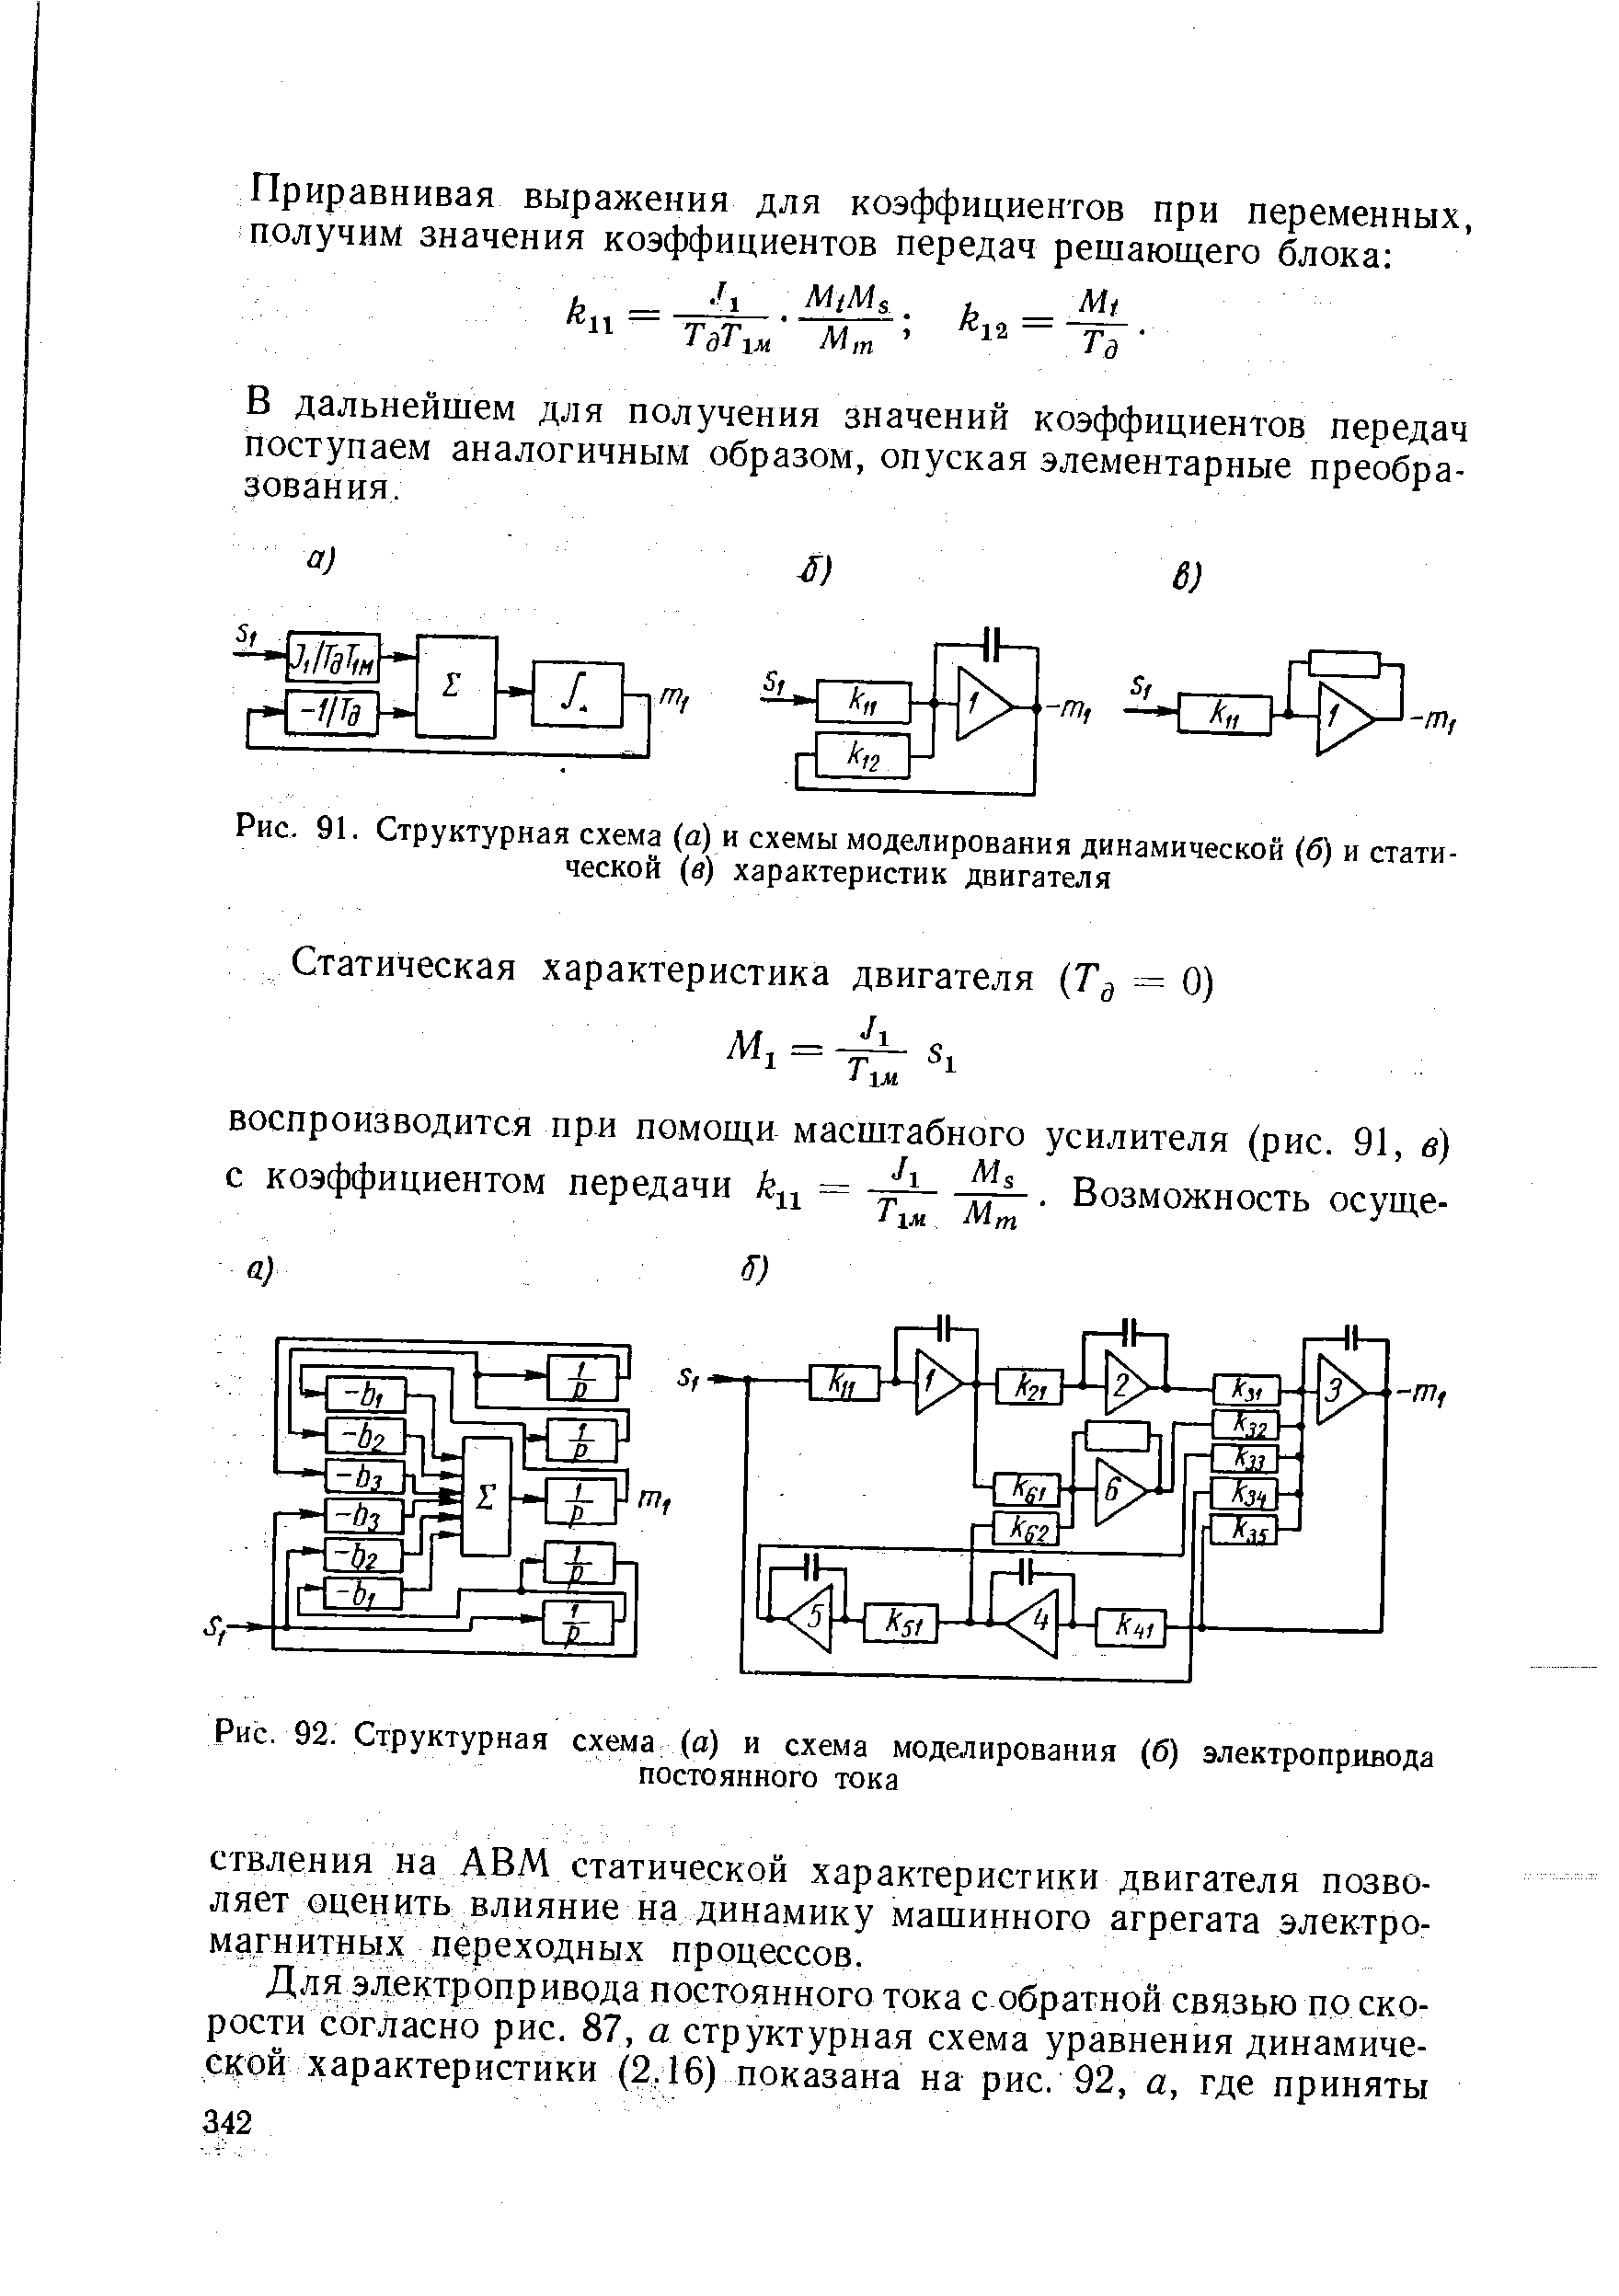 Рис. 91. Структурная схема (а) и схемы моделирования динамической (б) и статической (в) характеристик двигателя
